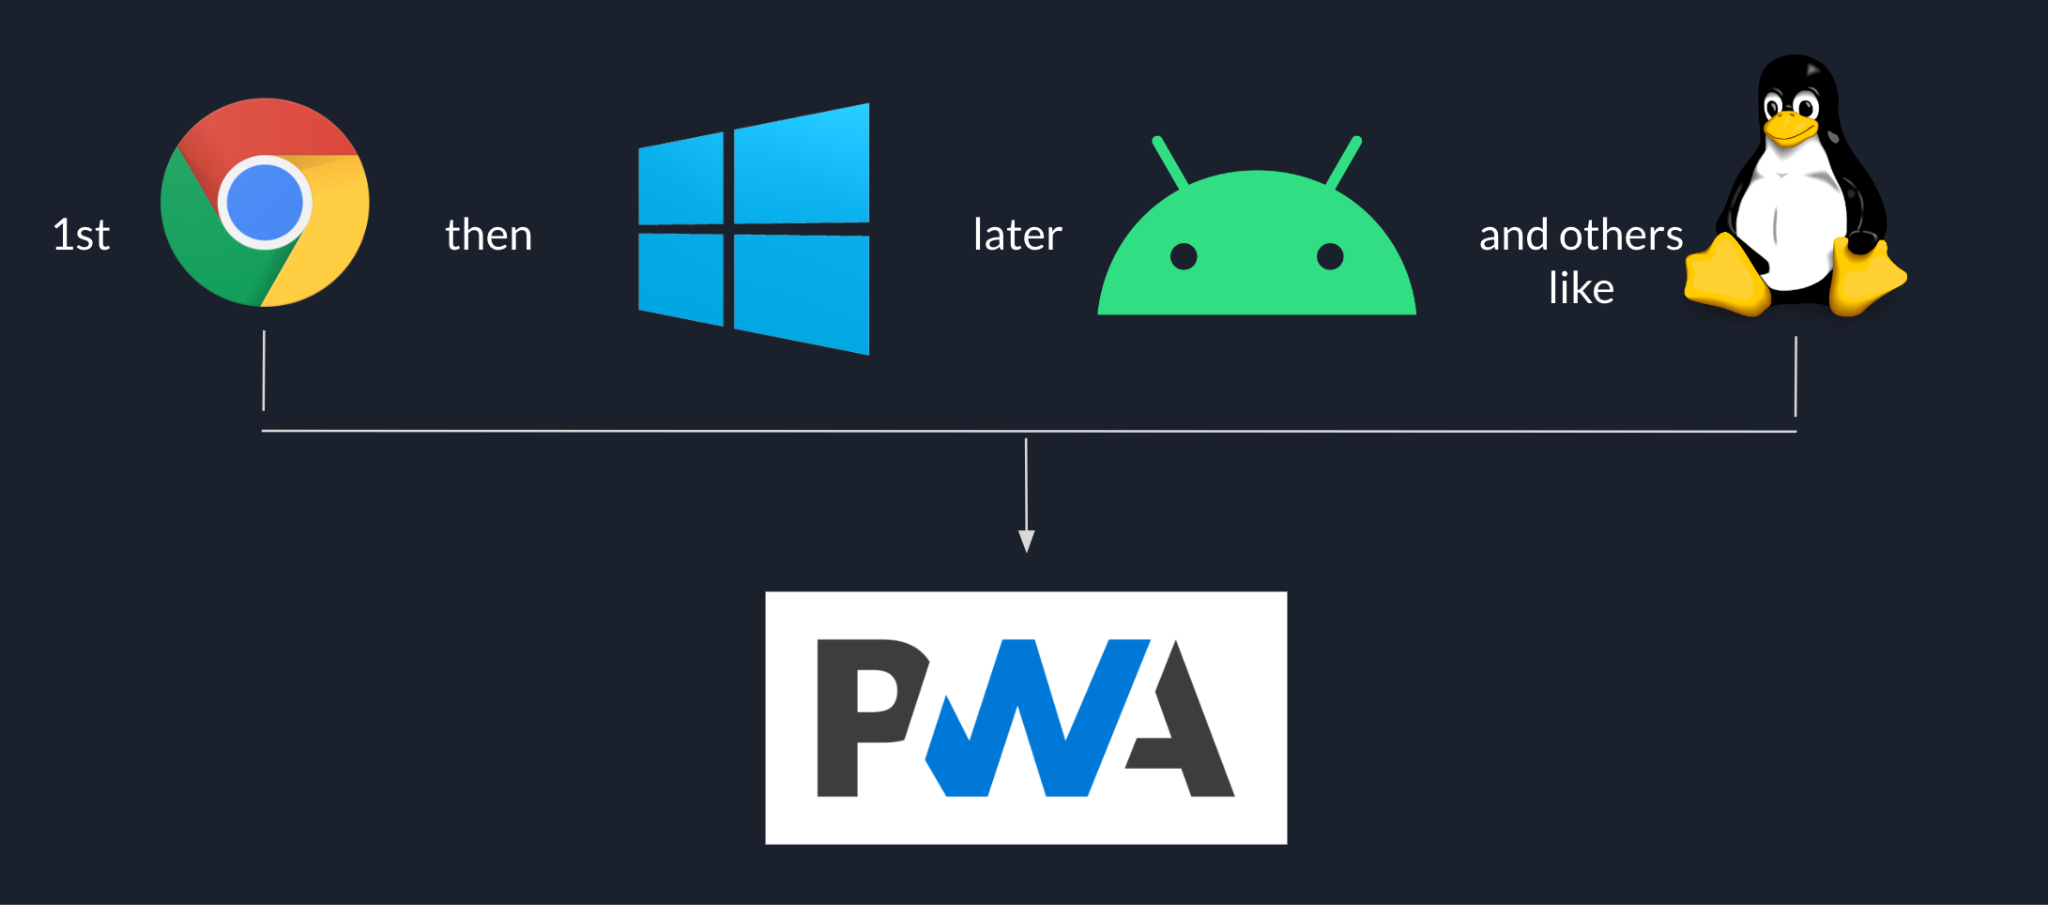 Sequenza di implementazione di Goodnotes, a partire da Chrome, quindi da Windows, quindi da Android e da altre piattaforme come Linux. Il tutto basato sulla PWA.